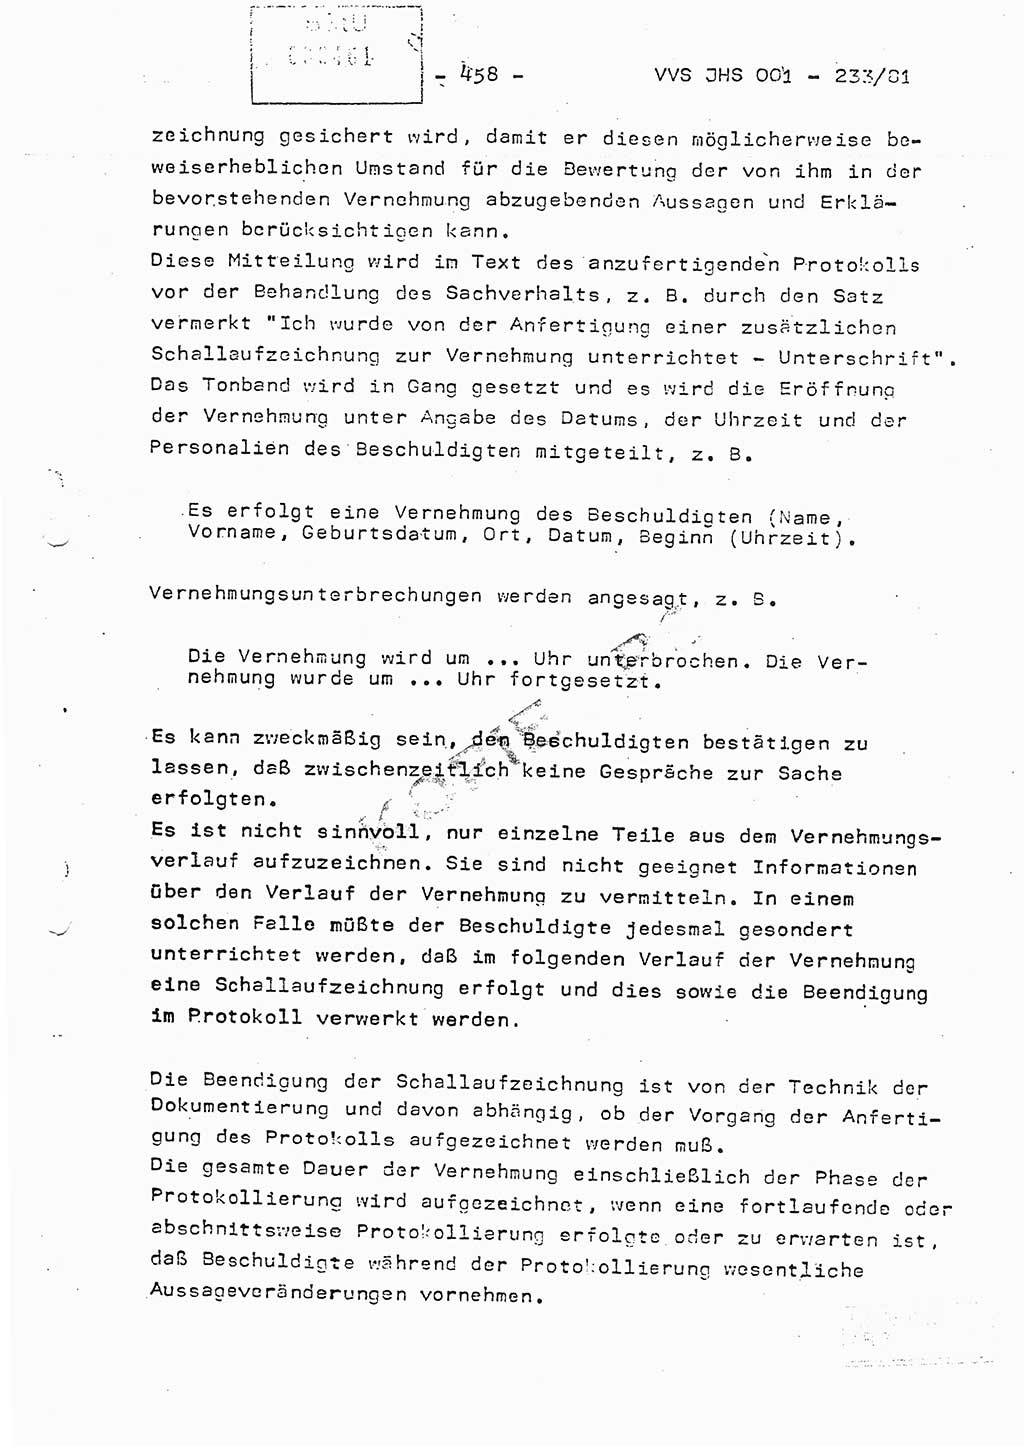 Dissertation Oberstleutnant Horst Zank (JHS), Oberstleutnant Dr. Karl-Heinz Knoblauch (JHS), Oberstleutnant Gustav-Adolf Kowalewski (HA Ⅸ), Oberstleutnant Wolfgang Plötner (HA Ⅸ), Ministerium für Staatssicherheit (MfS) [Deutsche Demokratische Republik (DDR)], Juristische Hochschule (JHS), Vertrauliche Verschlußsache (VVS) o001-233/81, Potsdam 1981, Blatt 458 (Diss. MfS DDR JHS VVS o001-233/81 1981, Bl. 458)